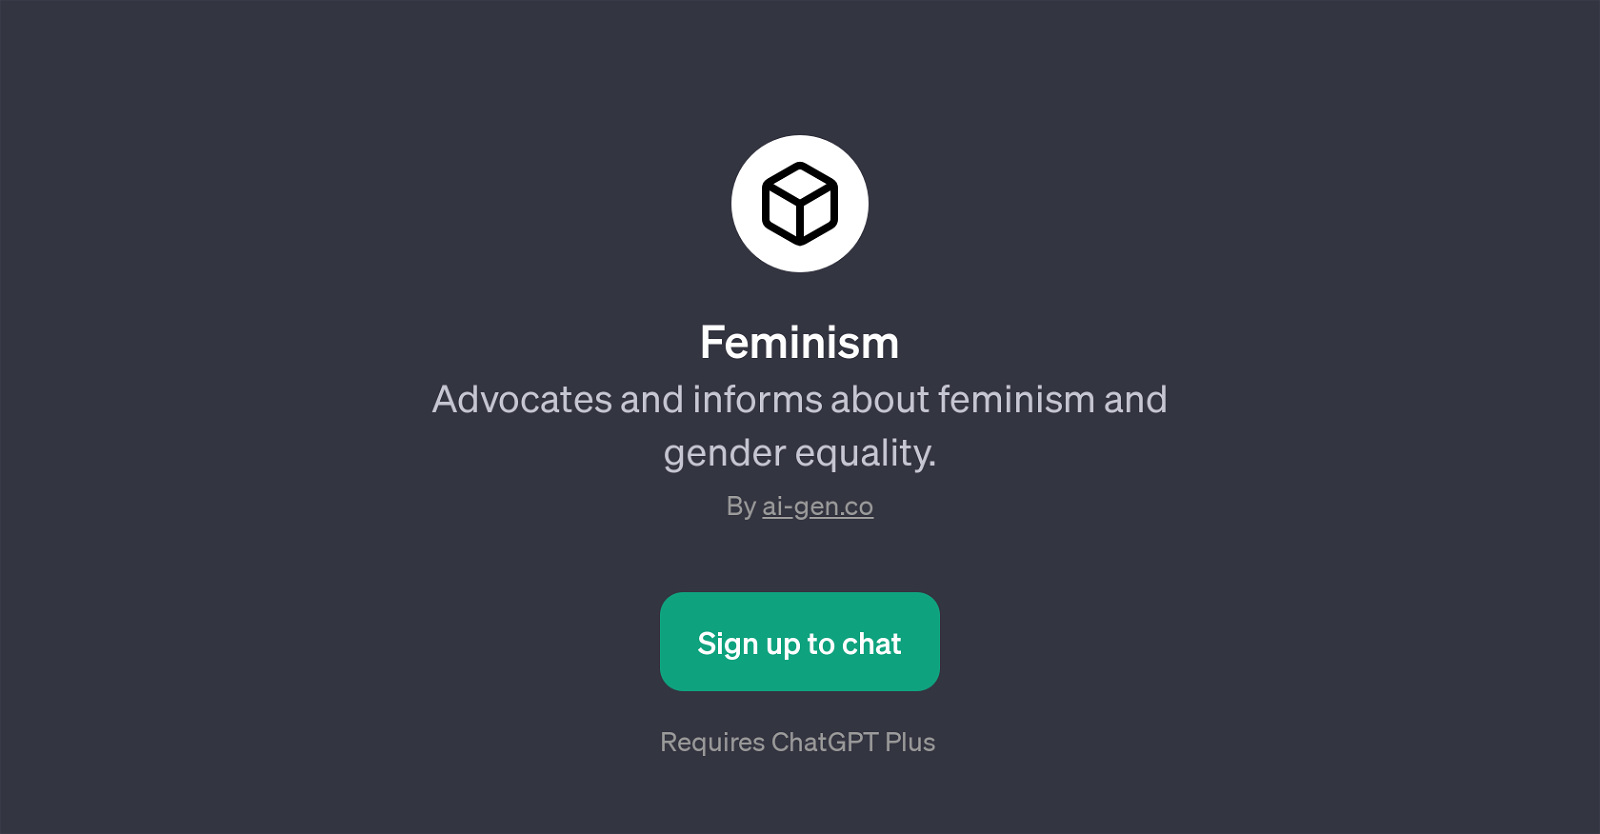 Feminism website